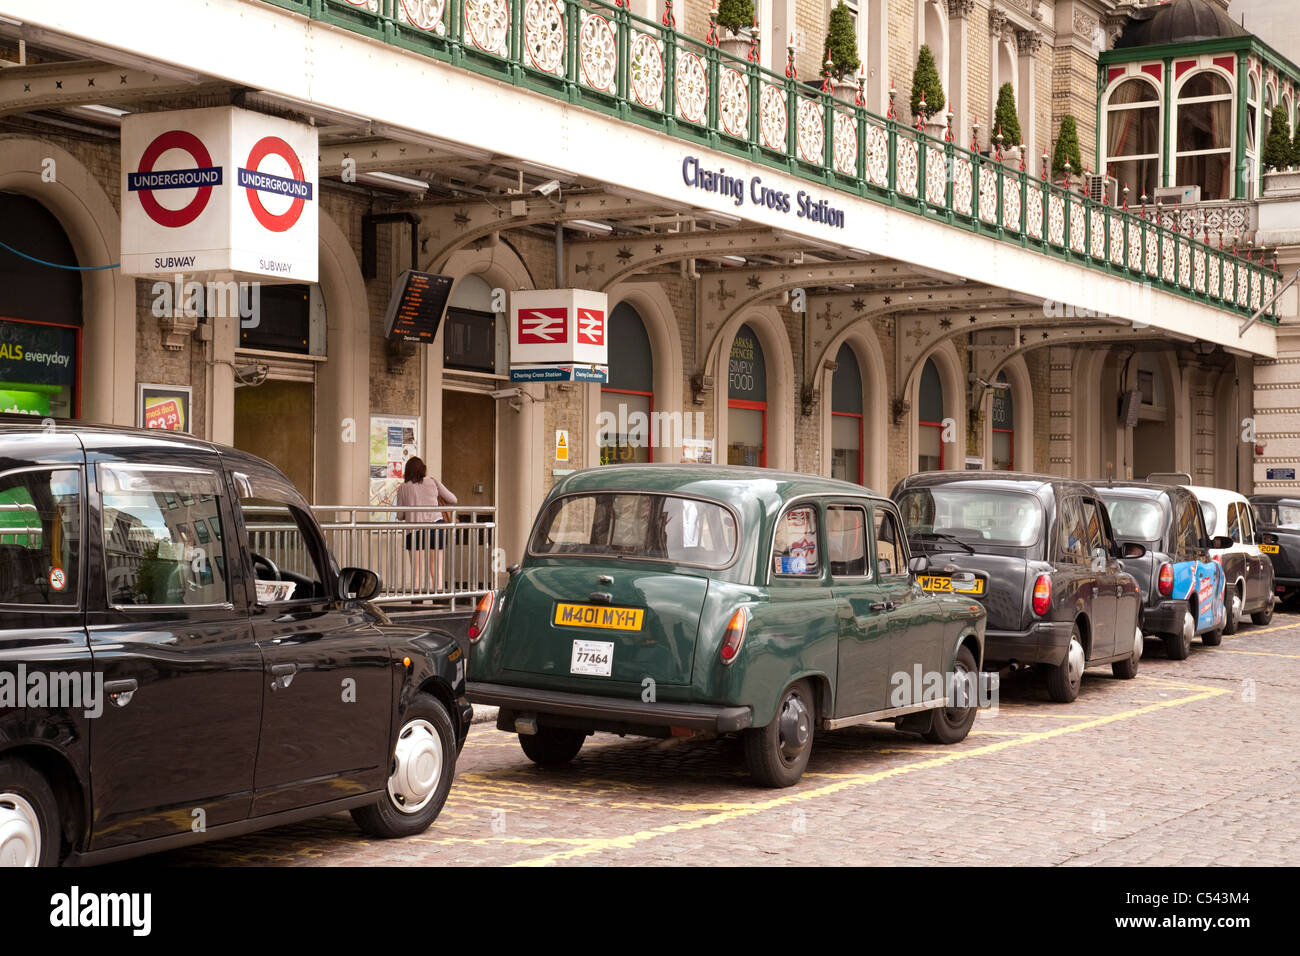 Taxis Les taxis de Londres, la gare de Charing Cross, The Strand, London UK Banque D'Images